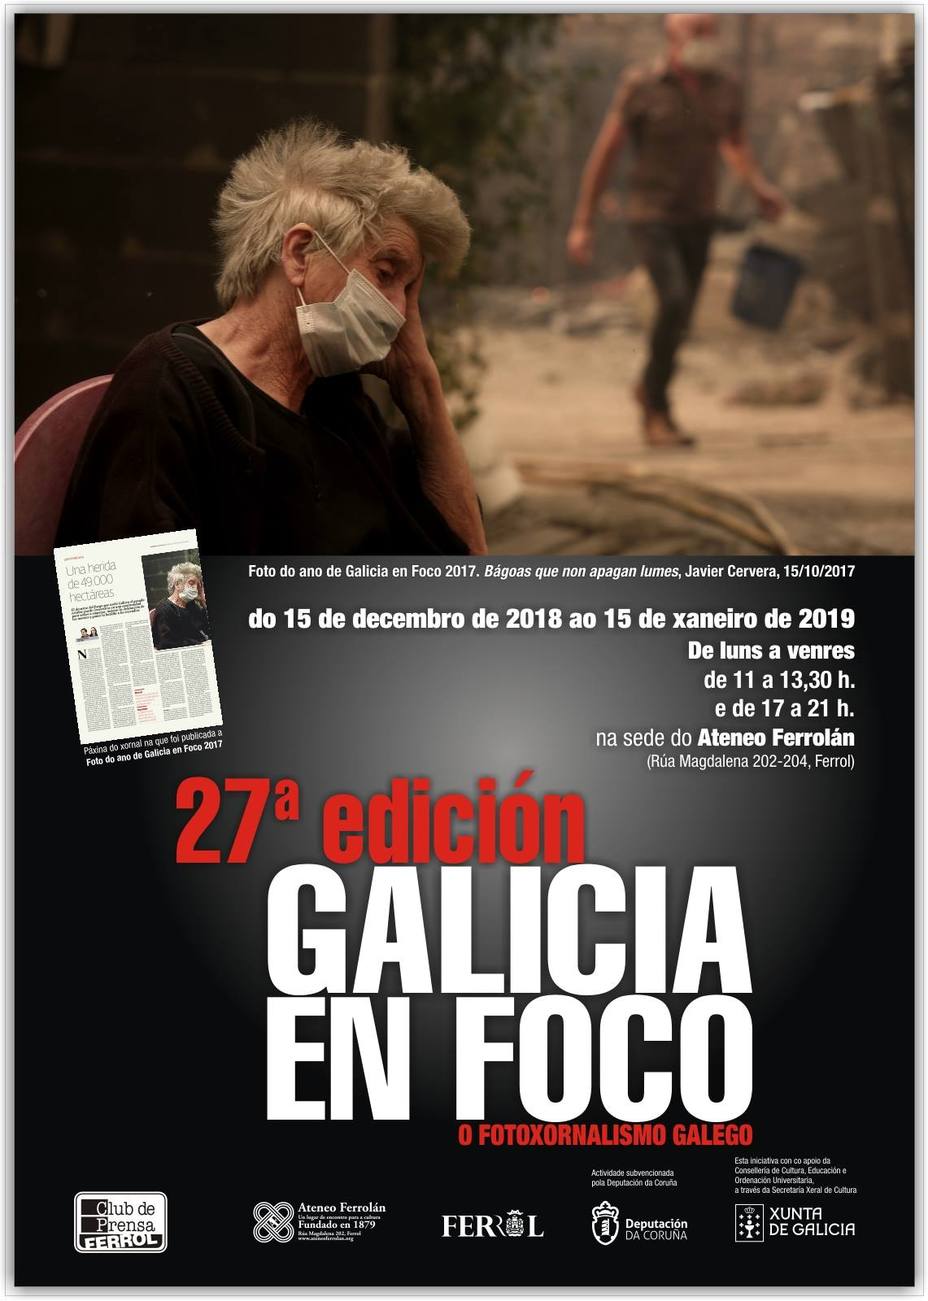 Cartel de Galicia en Foco del Club de Prensa de Ferrol